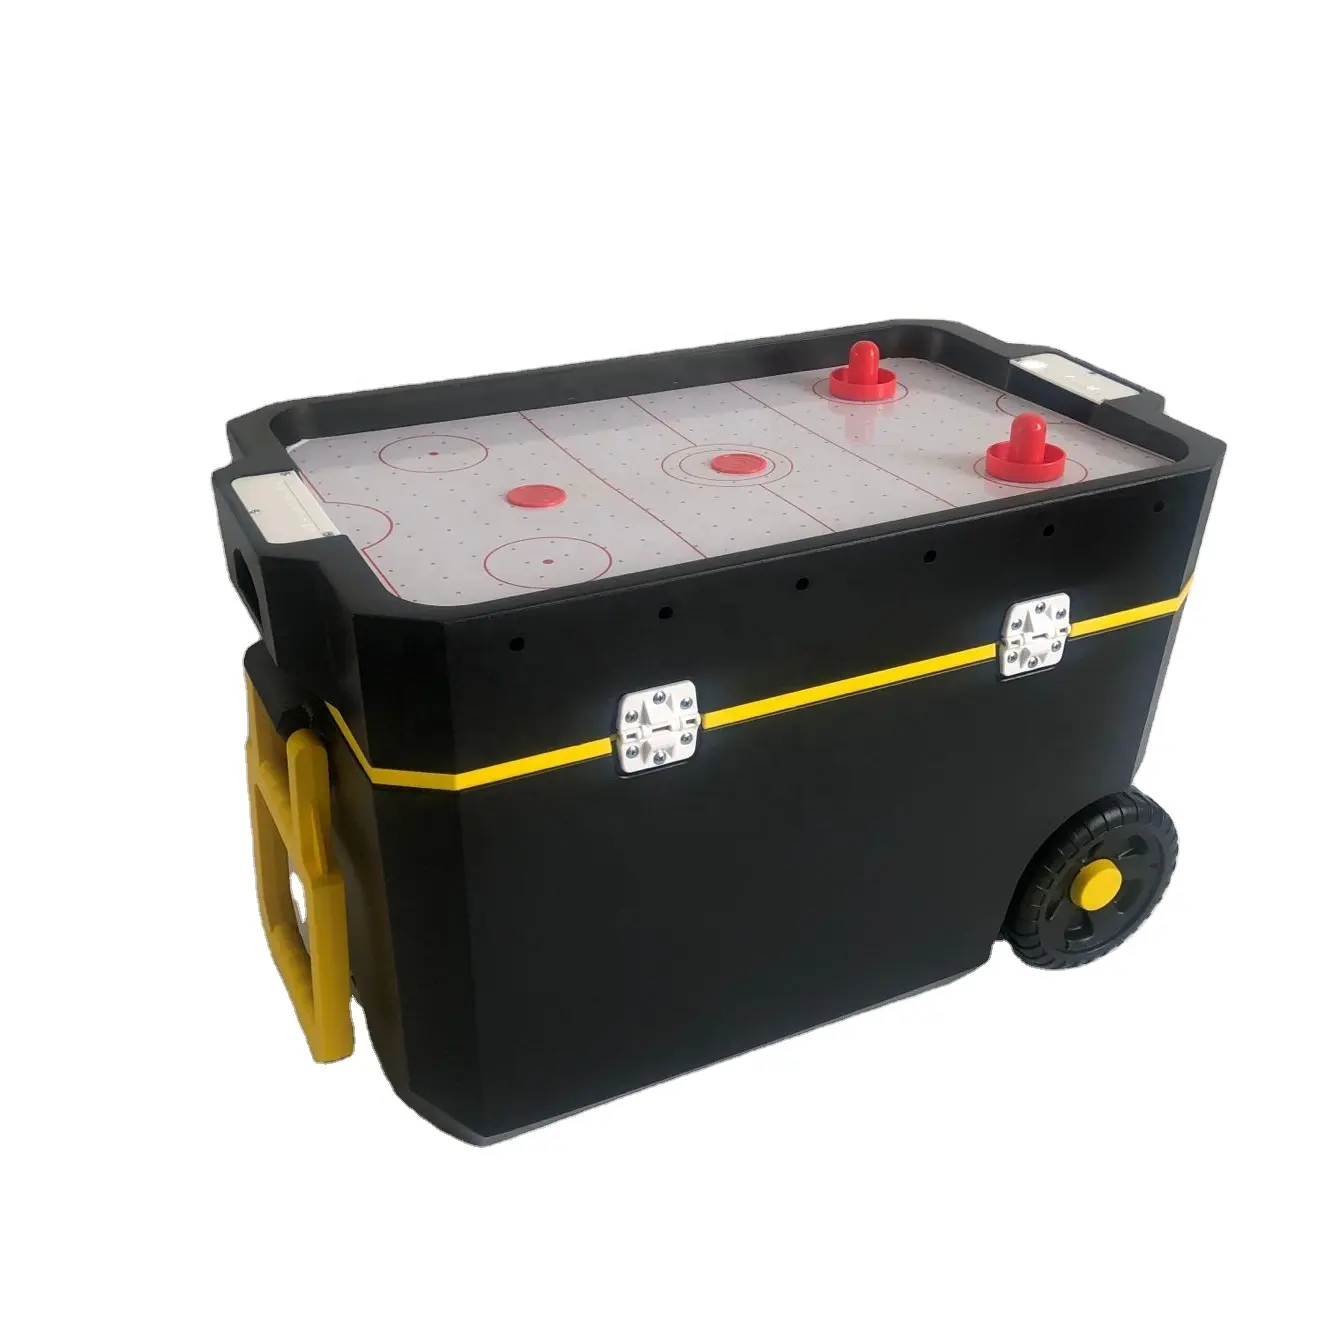 Kotak pendingin 60L dengan game hoki udara baterai lithium bawaan, kipas listrik kuat dengan promosi logo kotak es dada